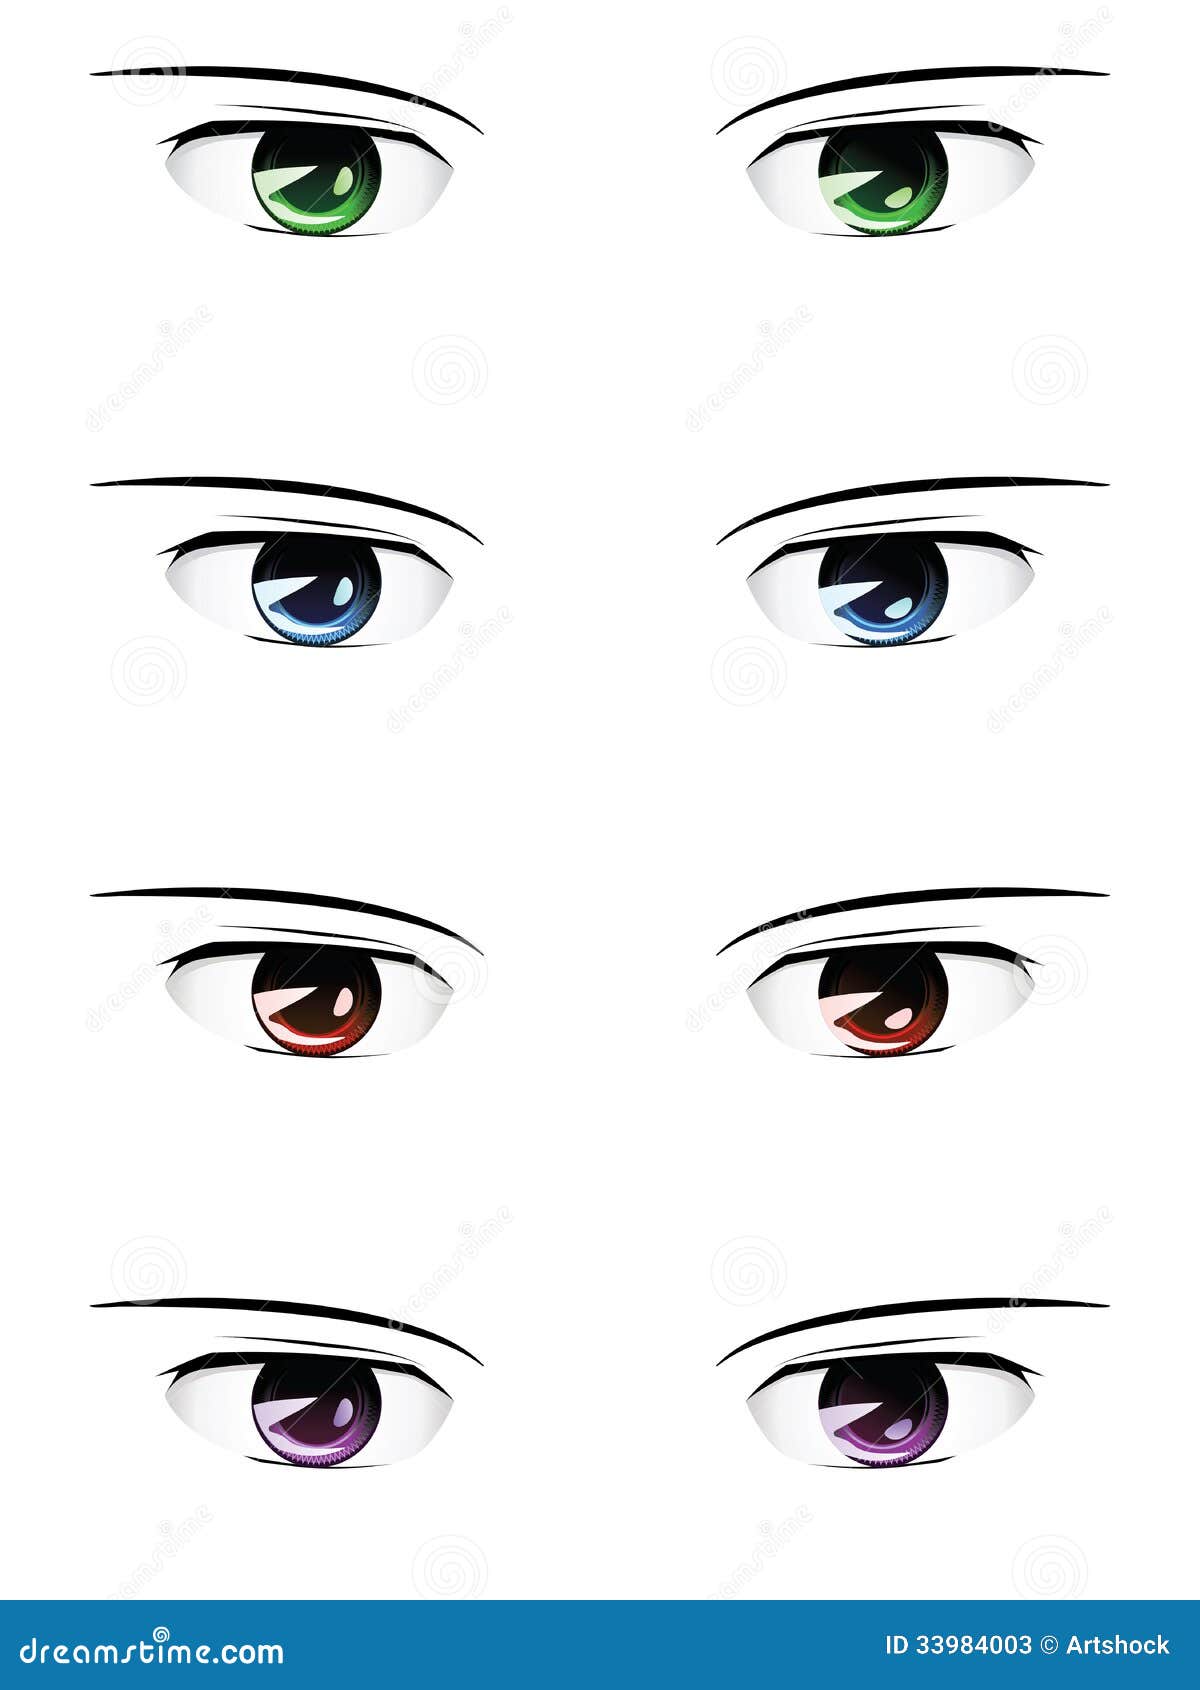 Anime Male Eyes Stock Photos - Image: 33984003